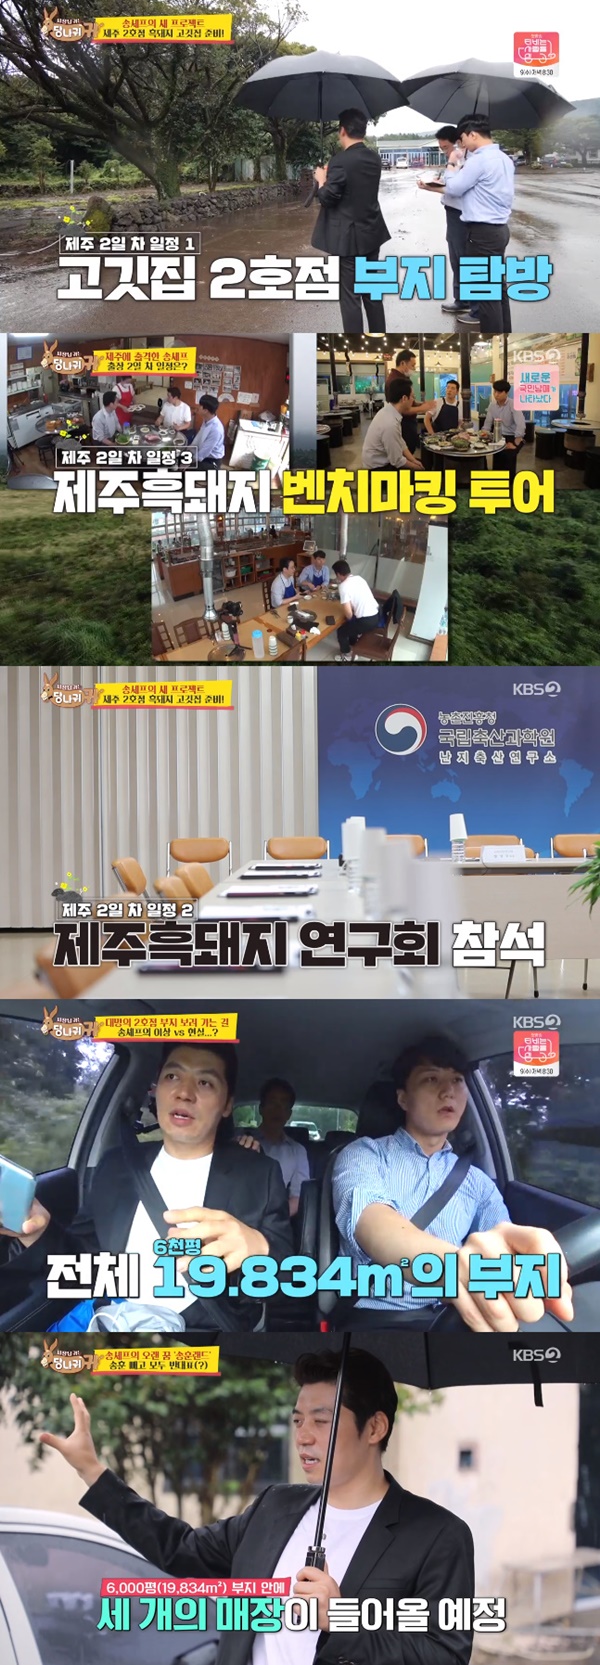 사진=KBS2 사장님 귀는 당나귀 귀